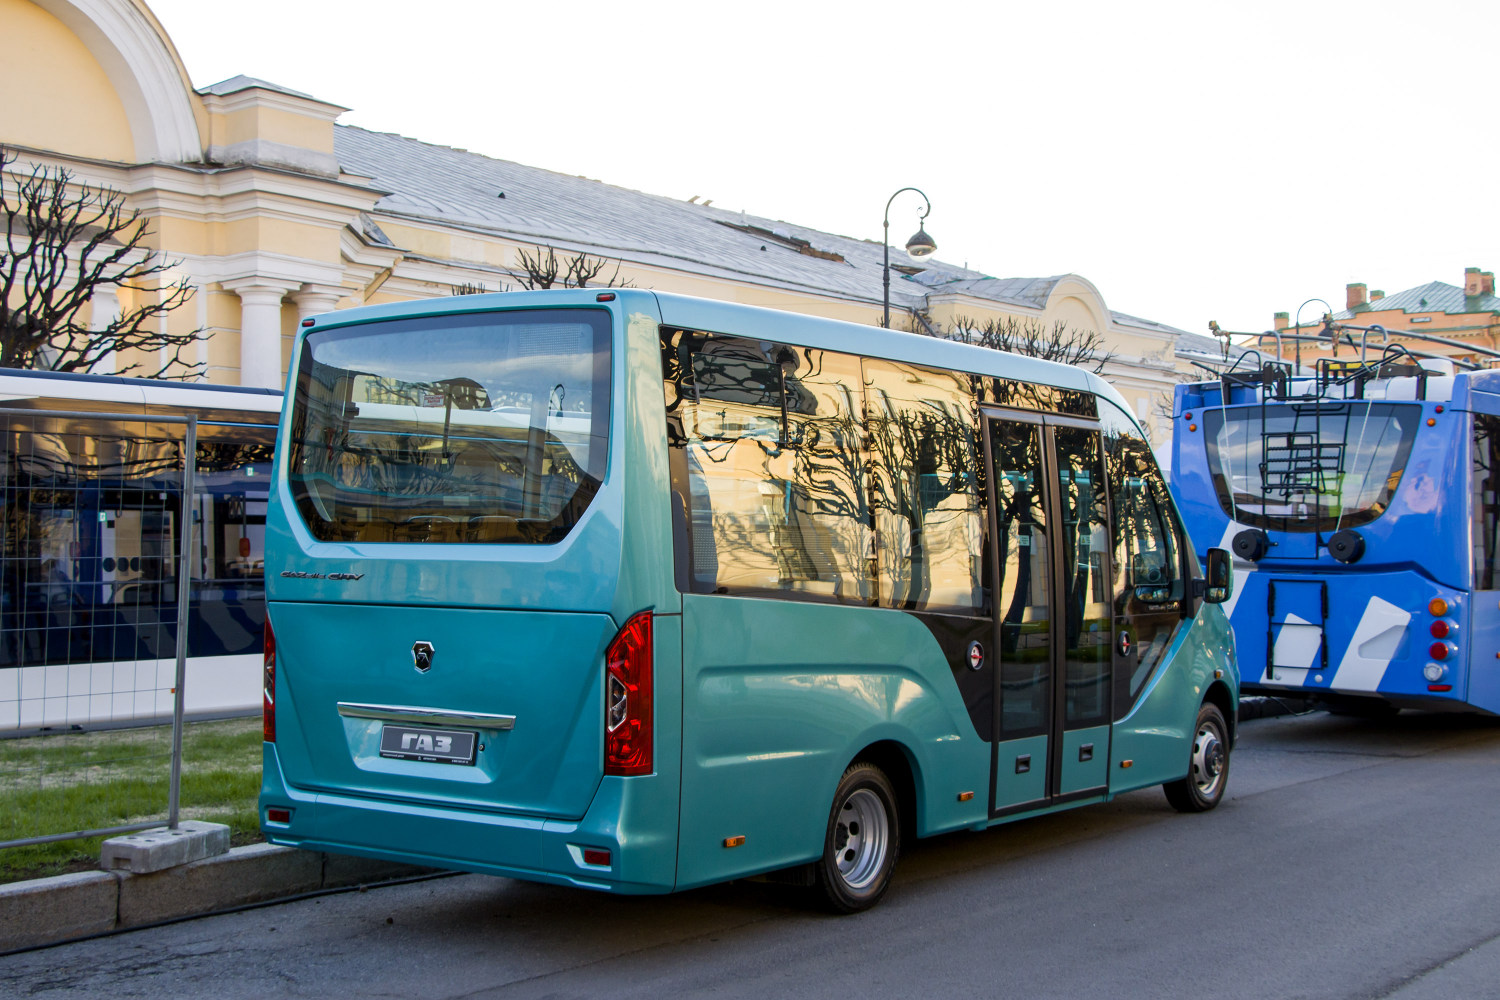 Szentpétervár, GAZ-A68R52 City sz.: Б/н; Szentpétervár — III International Transport Festival "SPbTransportFest-2022"; Szentpétervár — New buses